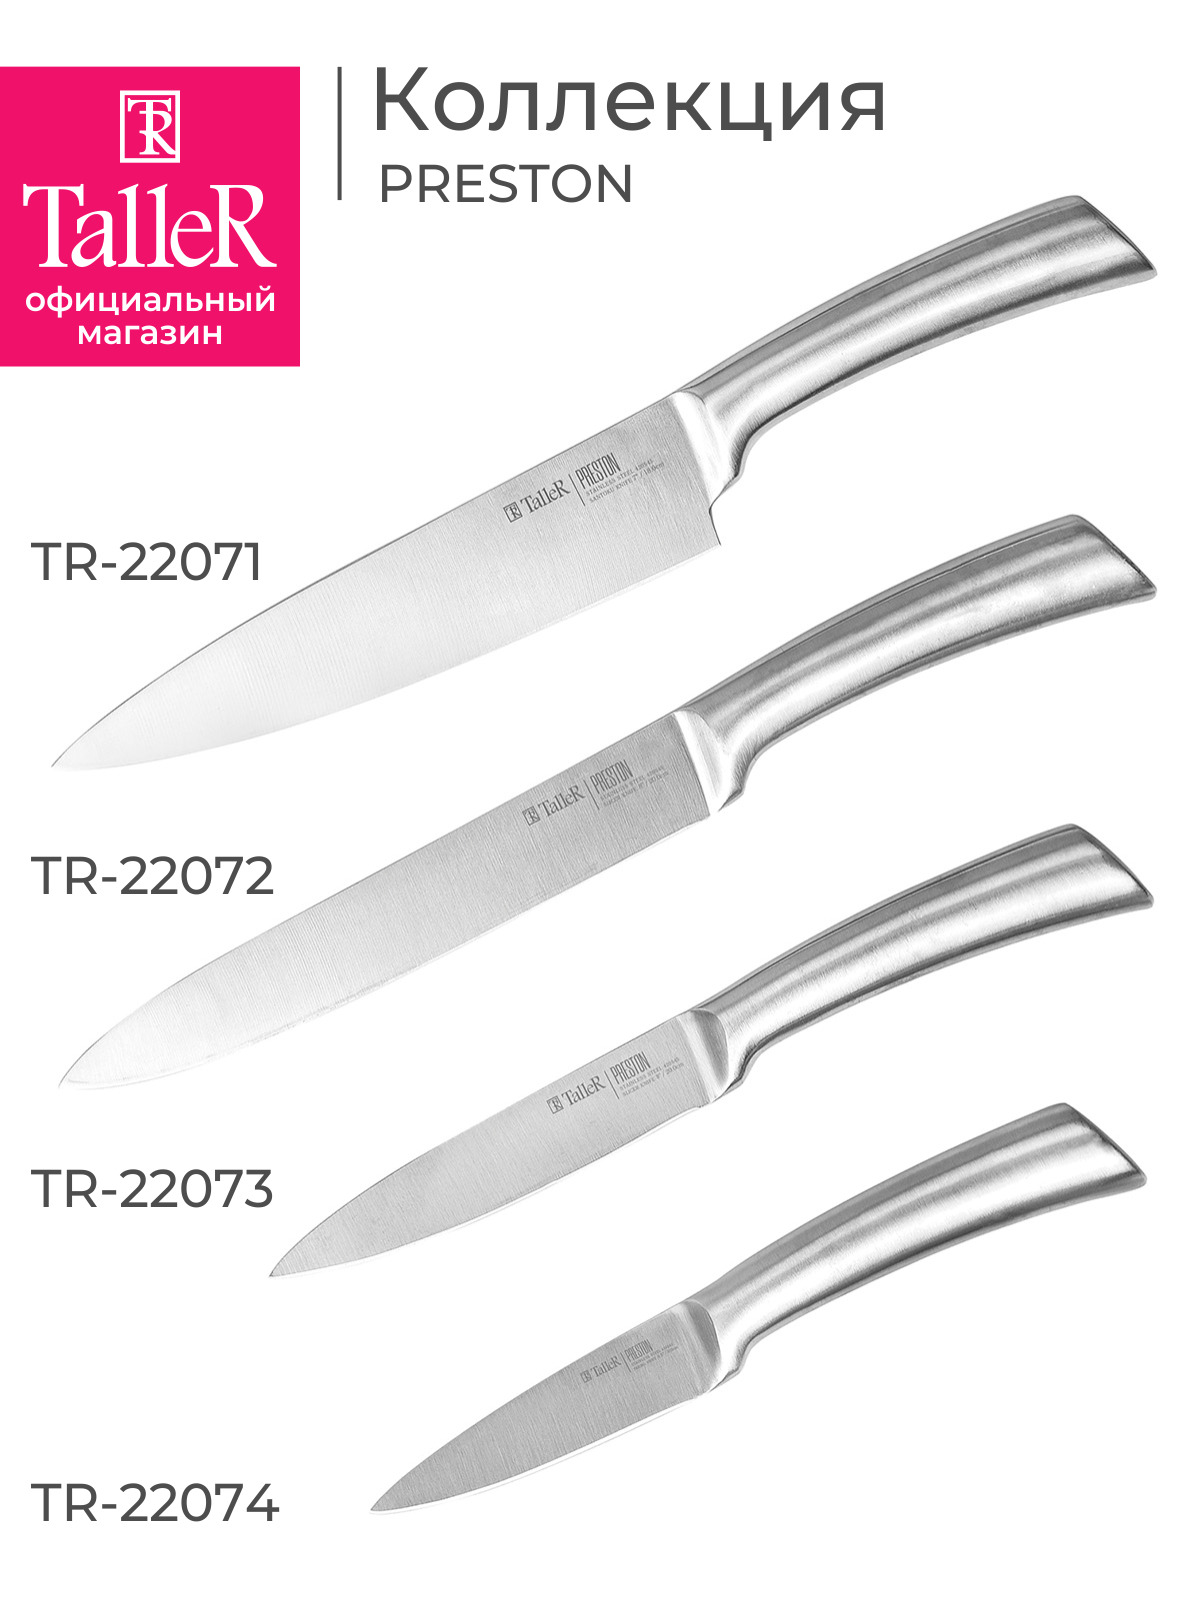 Нож для чистки TalleR TR-22074 Престон